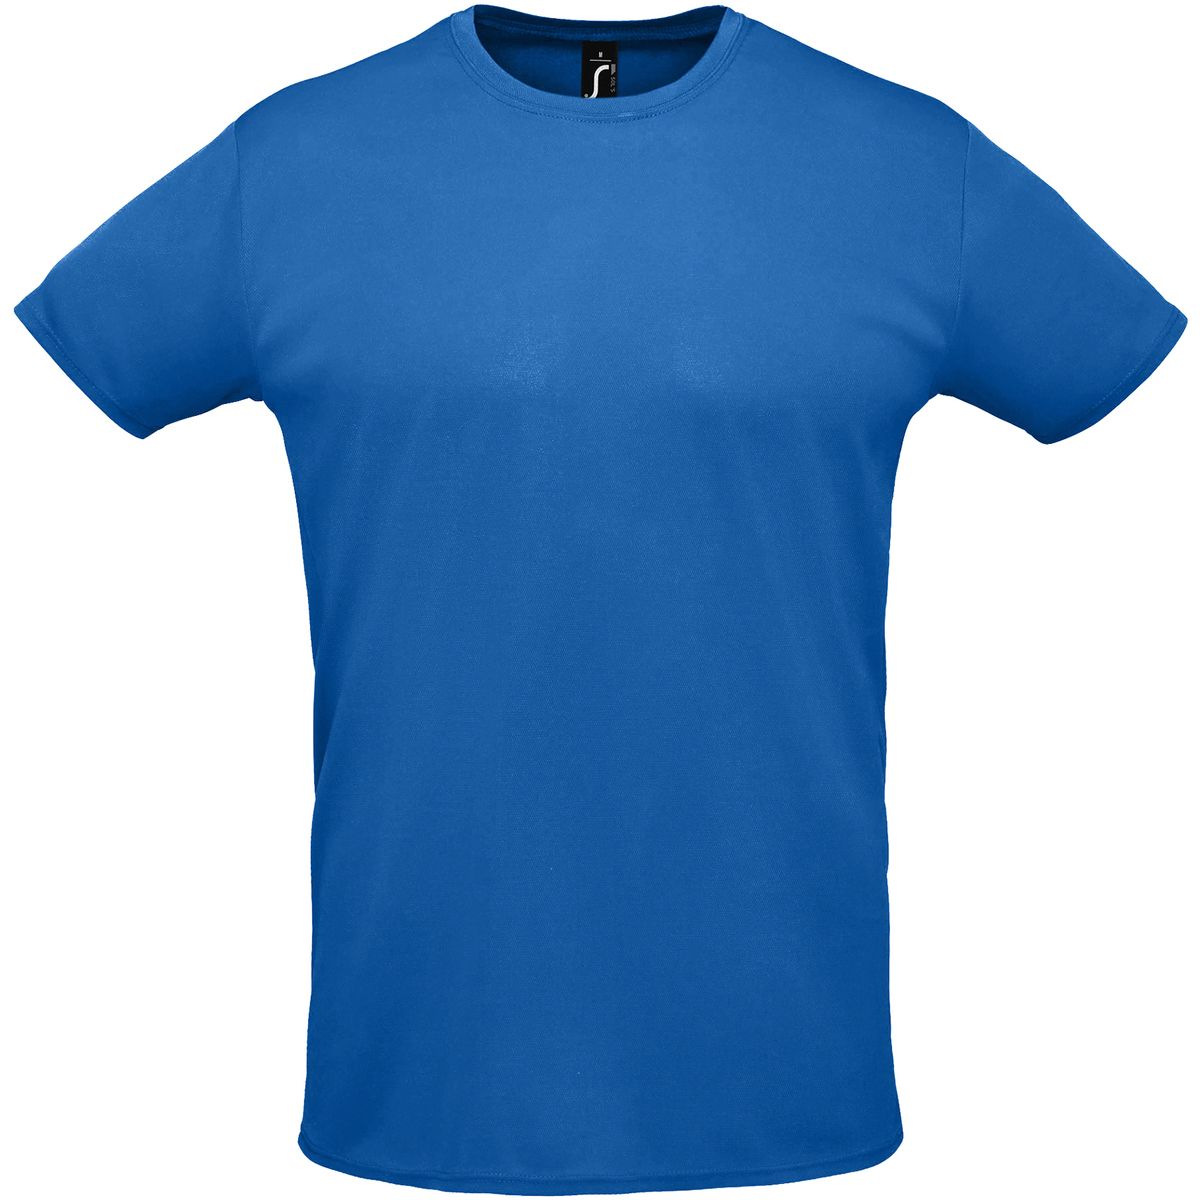 Oblačila Majice s kratkimi rokavi Sols SPRINT SPORTS Modra